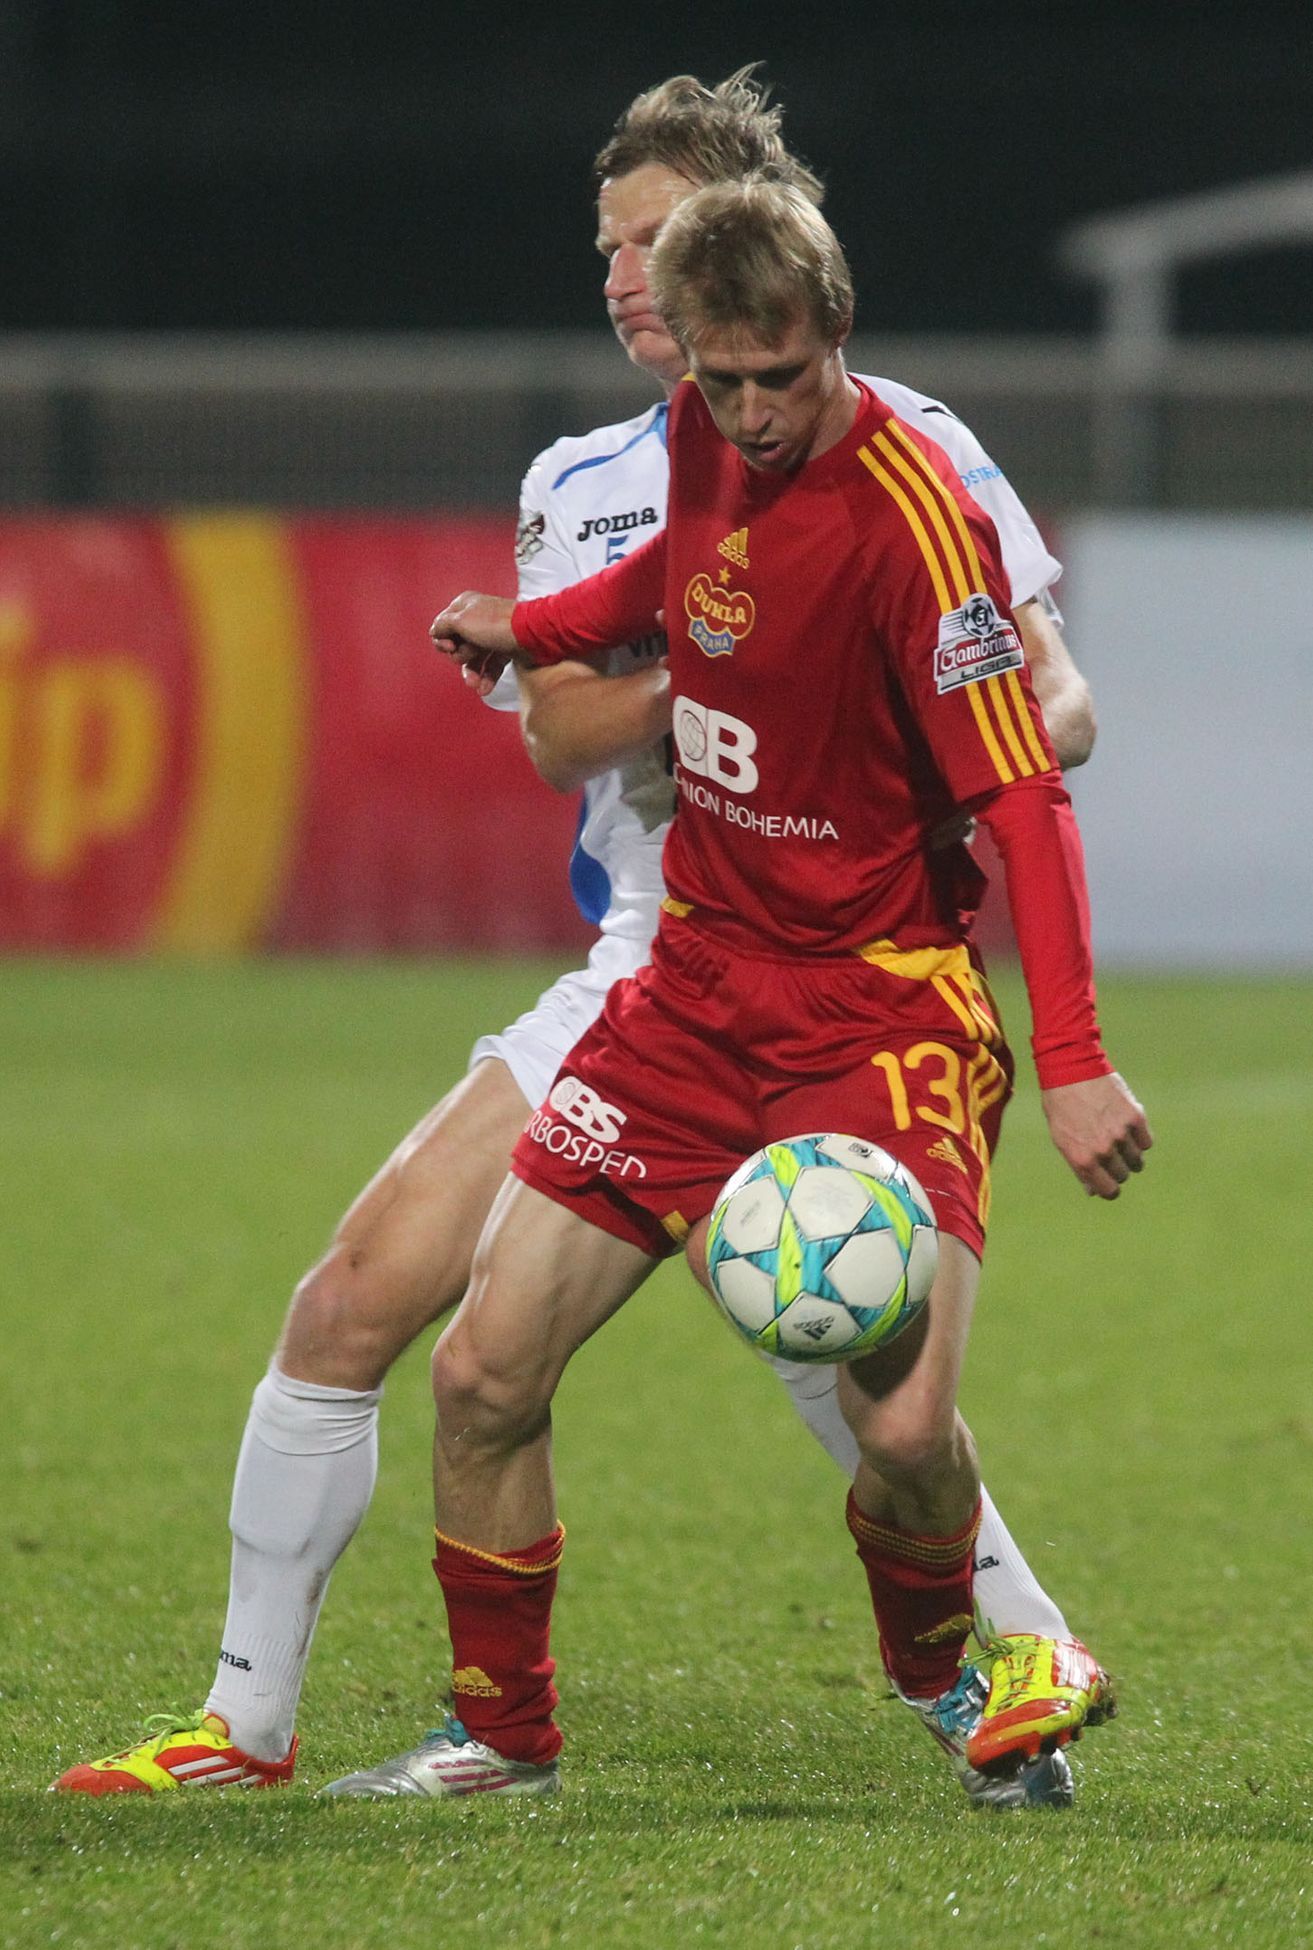 Fotbalista Dukly Praha Tomáš Berger v utkání proti Baníku Ostrava ve 14. kole Gambrinus ligy 2012/13.